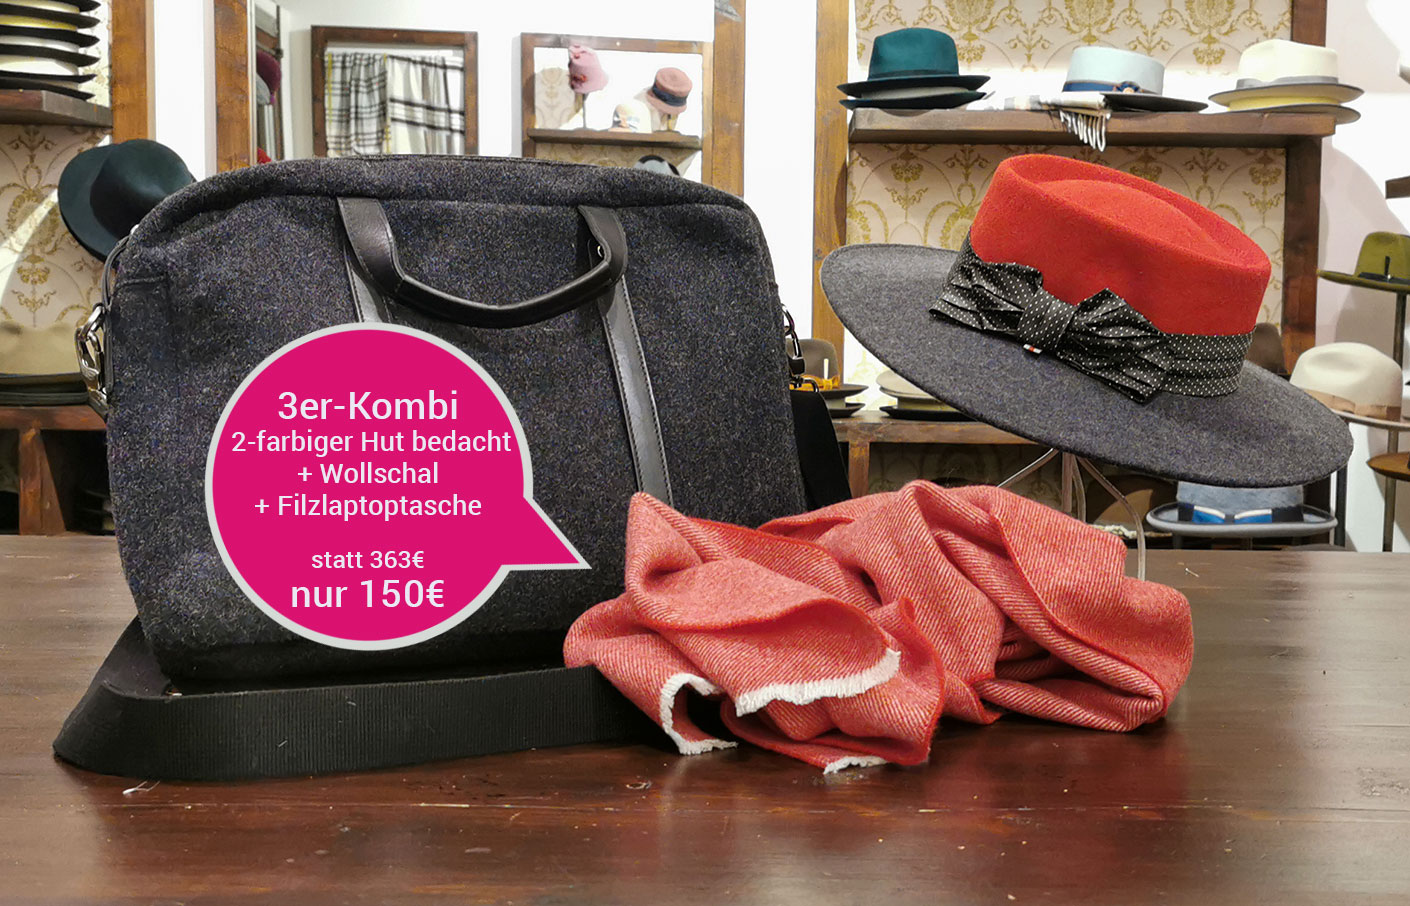 Kombination 2- farbiger Hut bedacht, Wollschal und Filzlaptoptasche statt 363 € nur 150 €